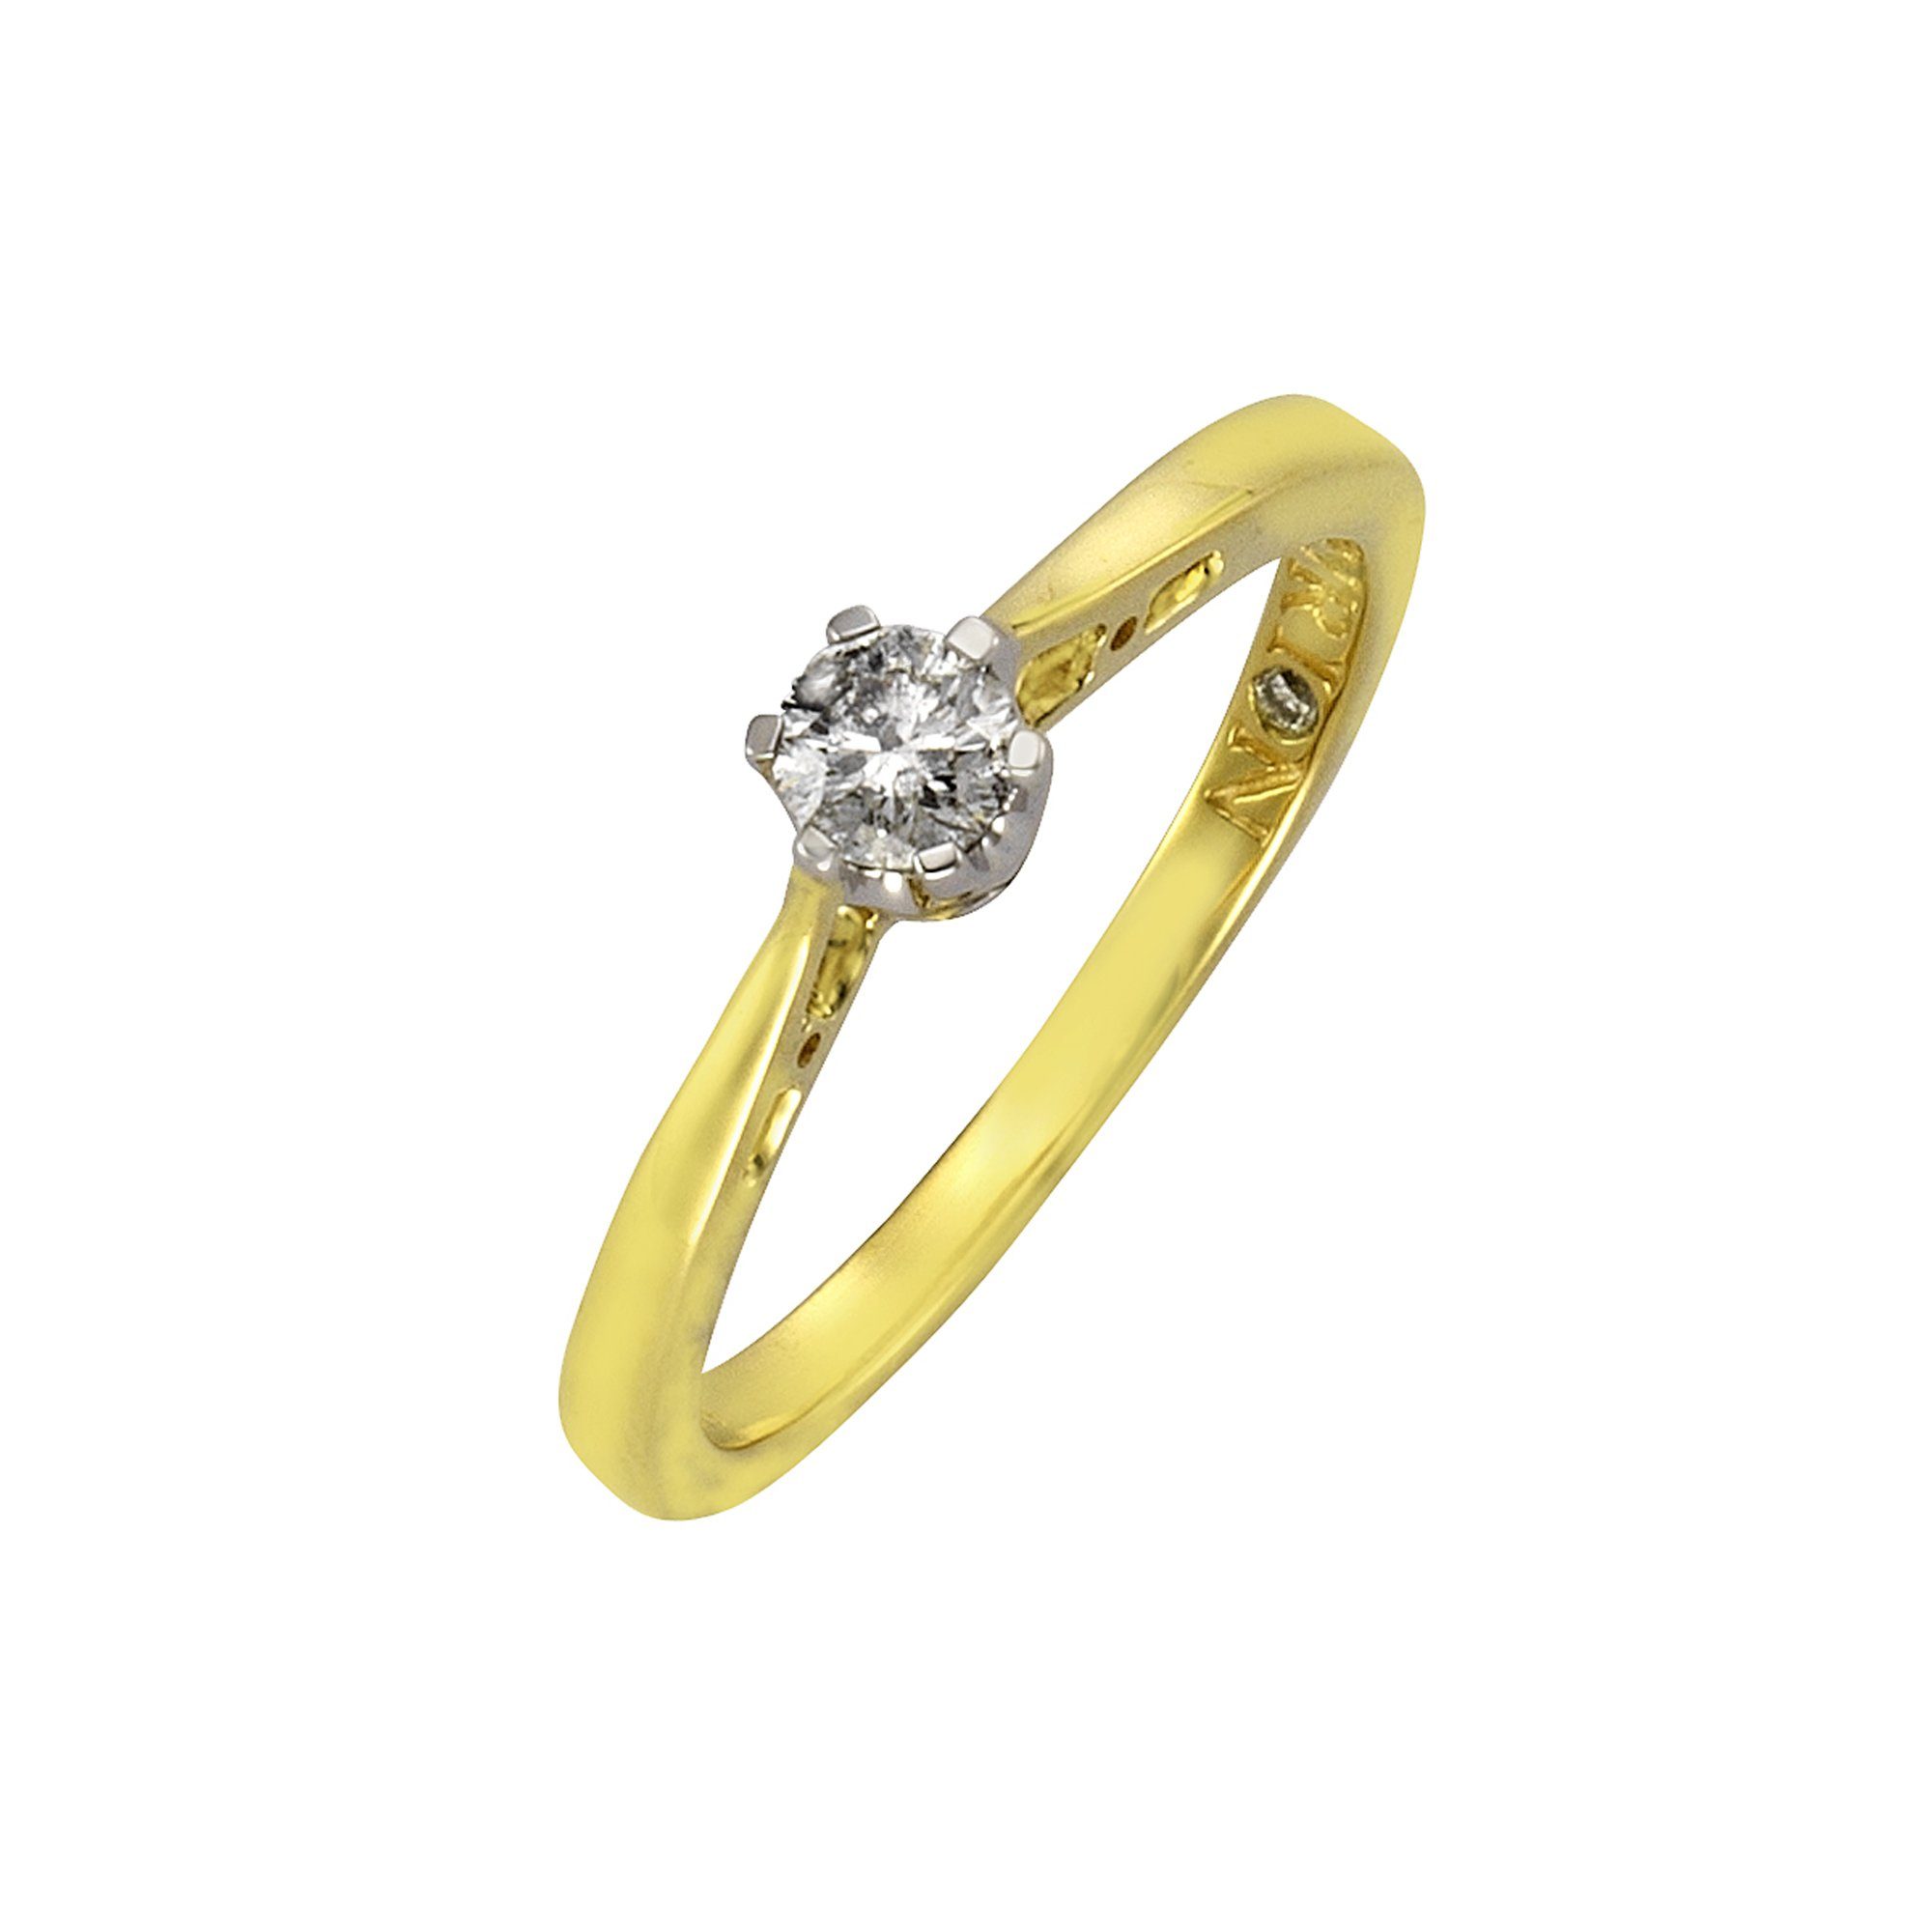 Diamonds by Ellen K. 0,25ct. Gold 585 zweifarbig Brillant Fingerring